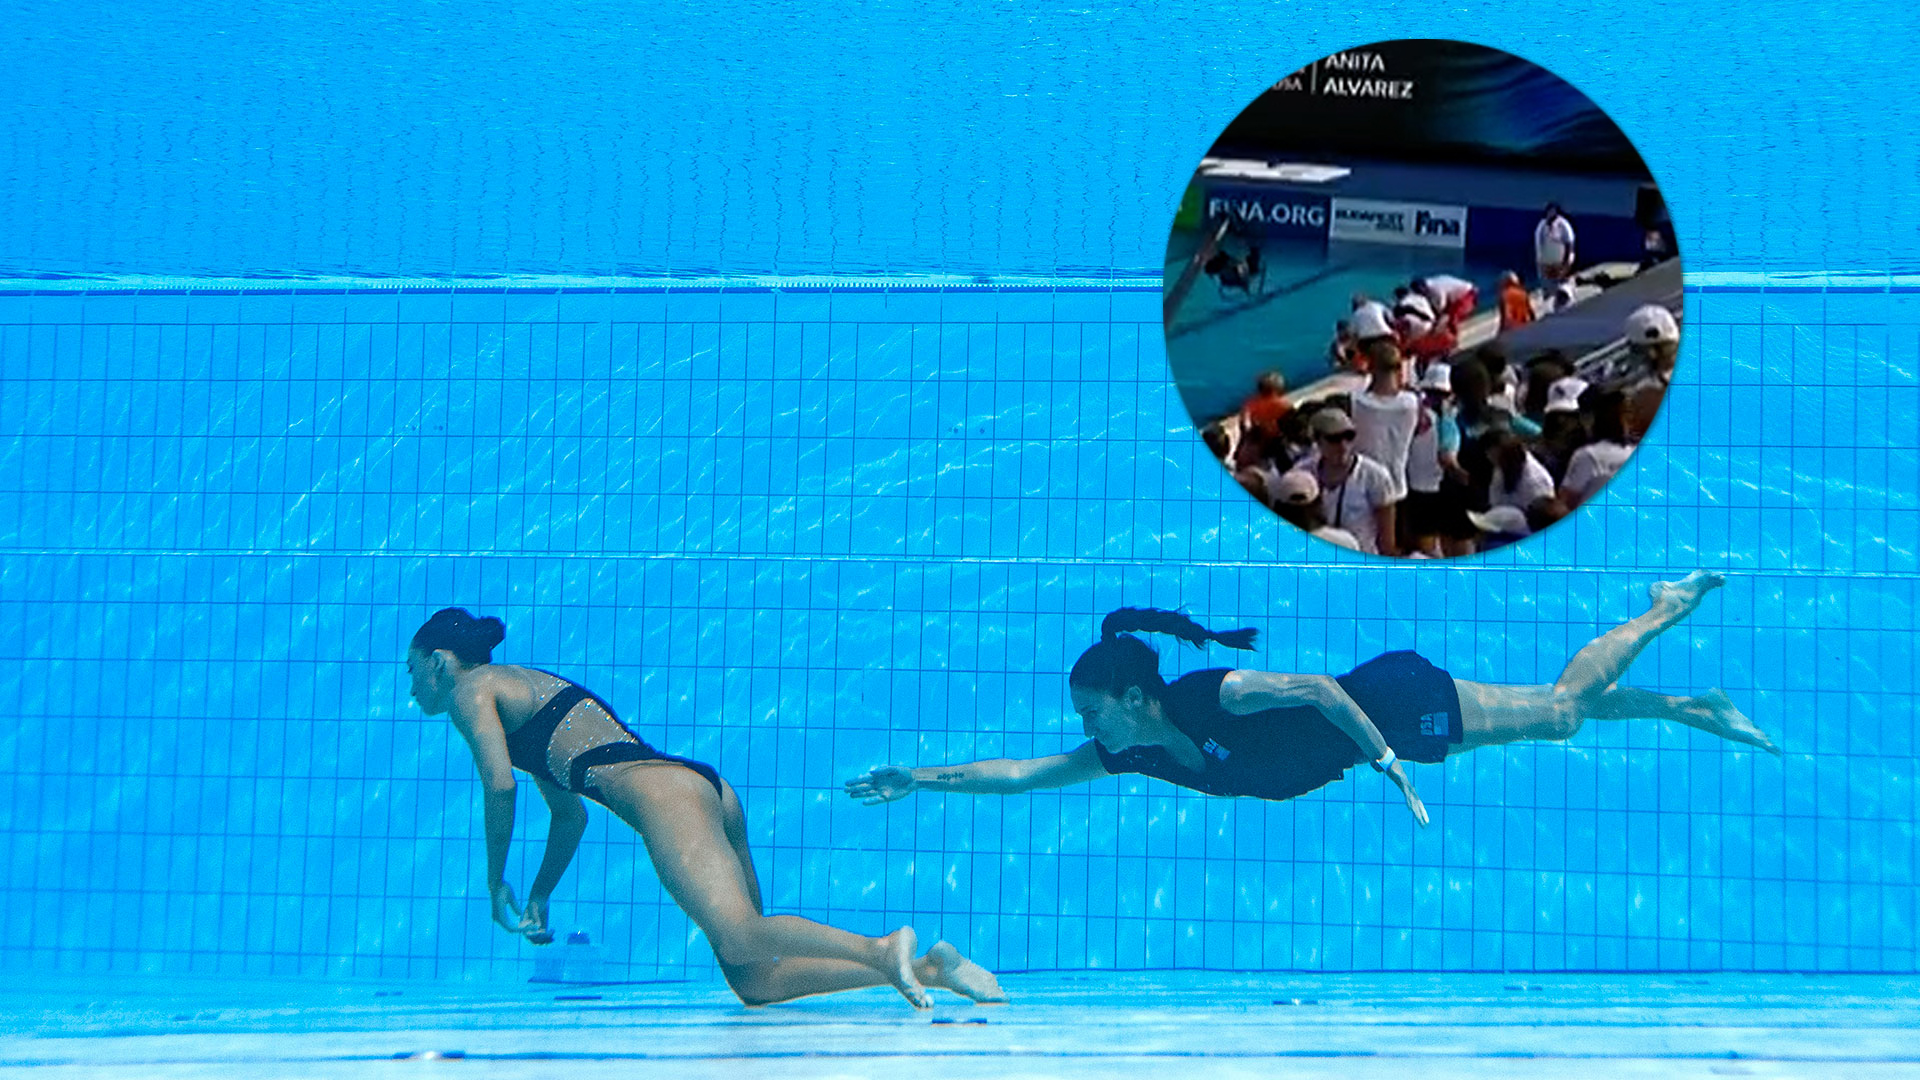 El video de la rutina de la nadadora Anita Álvarez y la asistencia de su entrenadora Andrea Fuentes